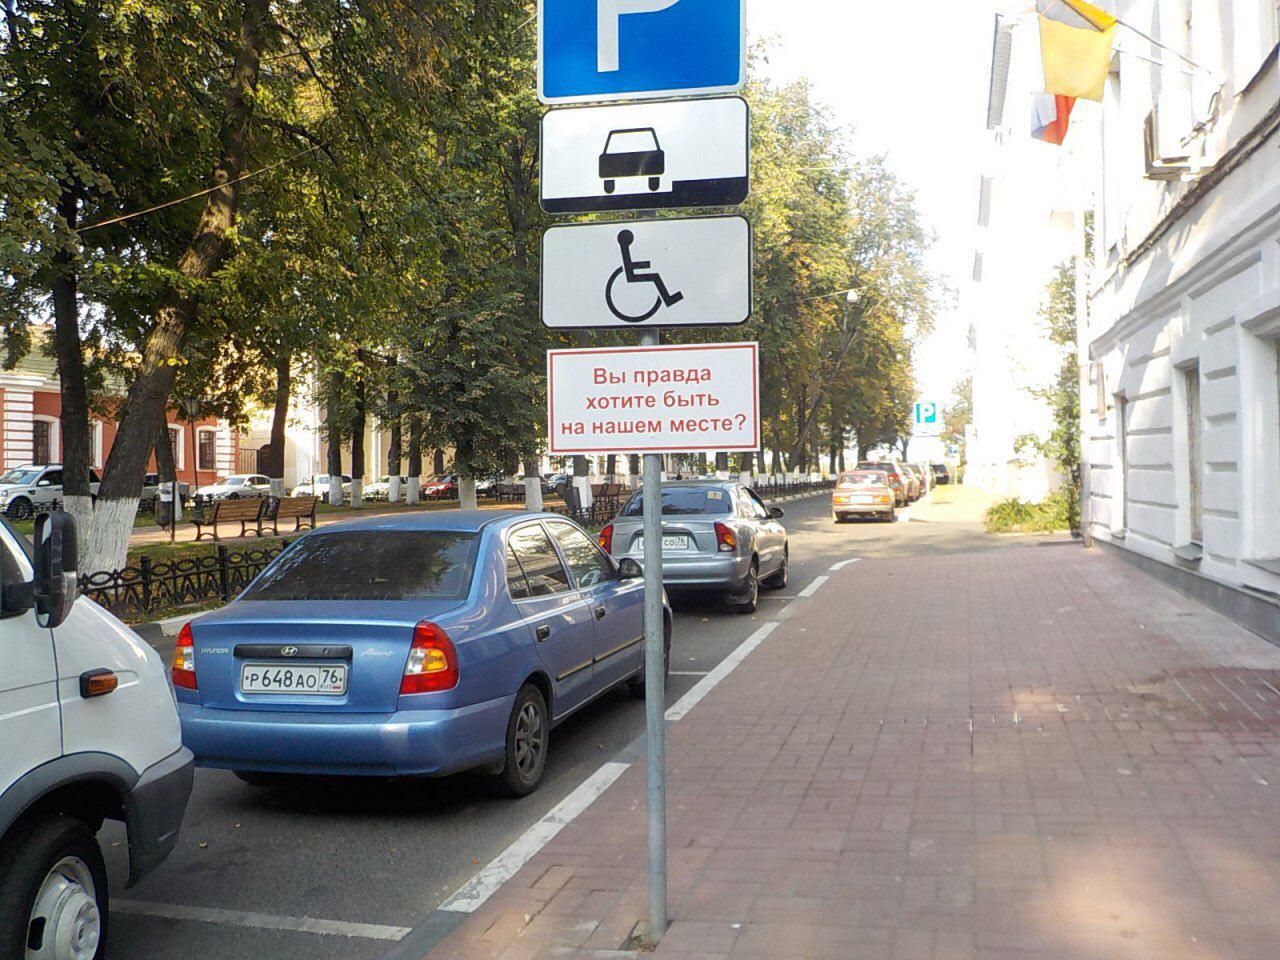 Инвалиду можно парковаться на платной парковке. Стоянка для инвалидов. Парковочное место для инвалидов. Автостоянка для инвалидов. Парковочное место табличка.